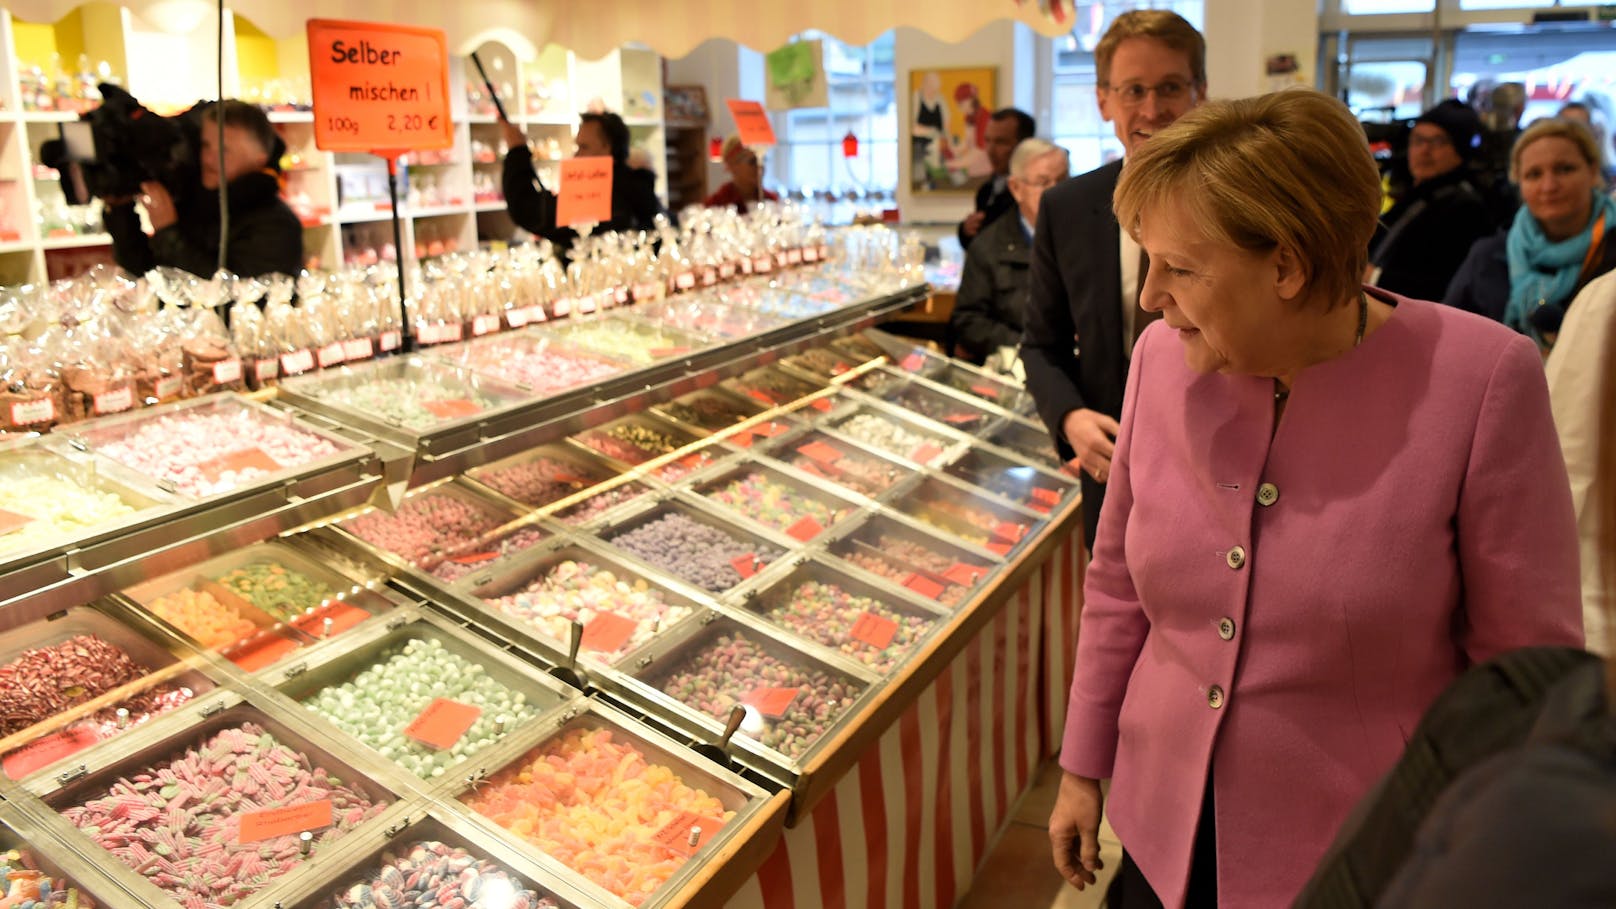 Ex-Kanzlerin Angela Merkel wurde beim Einkaufen bestohlen.